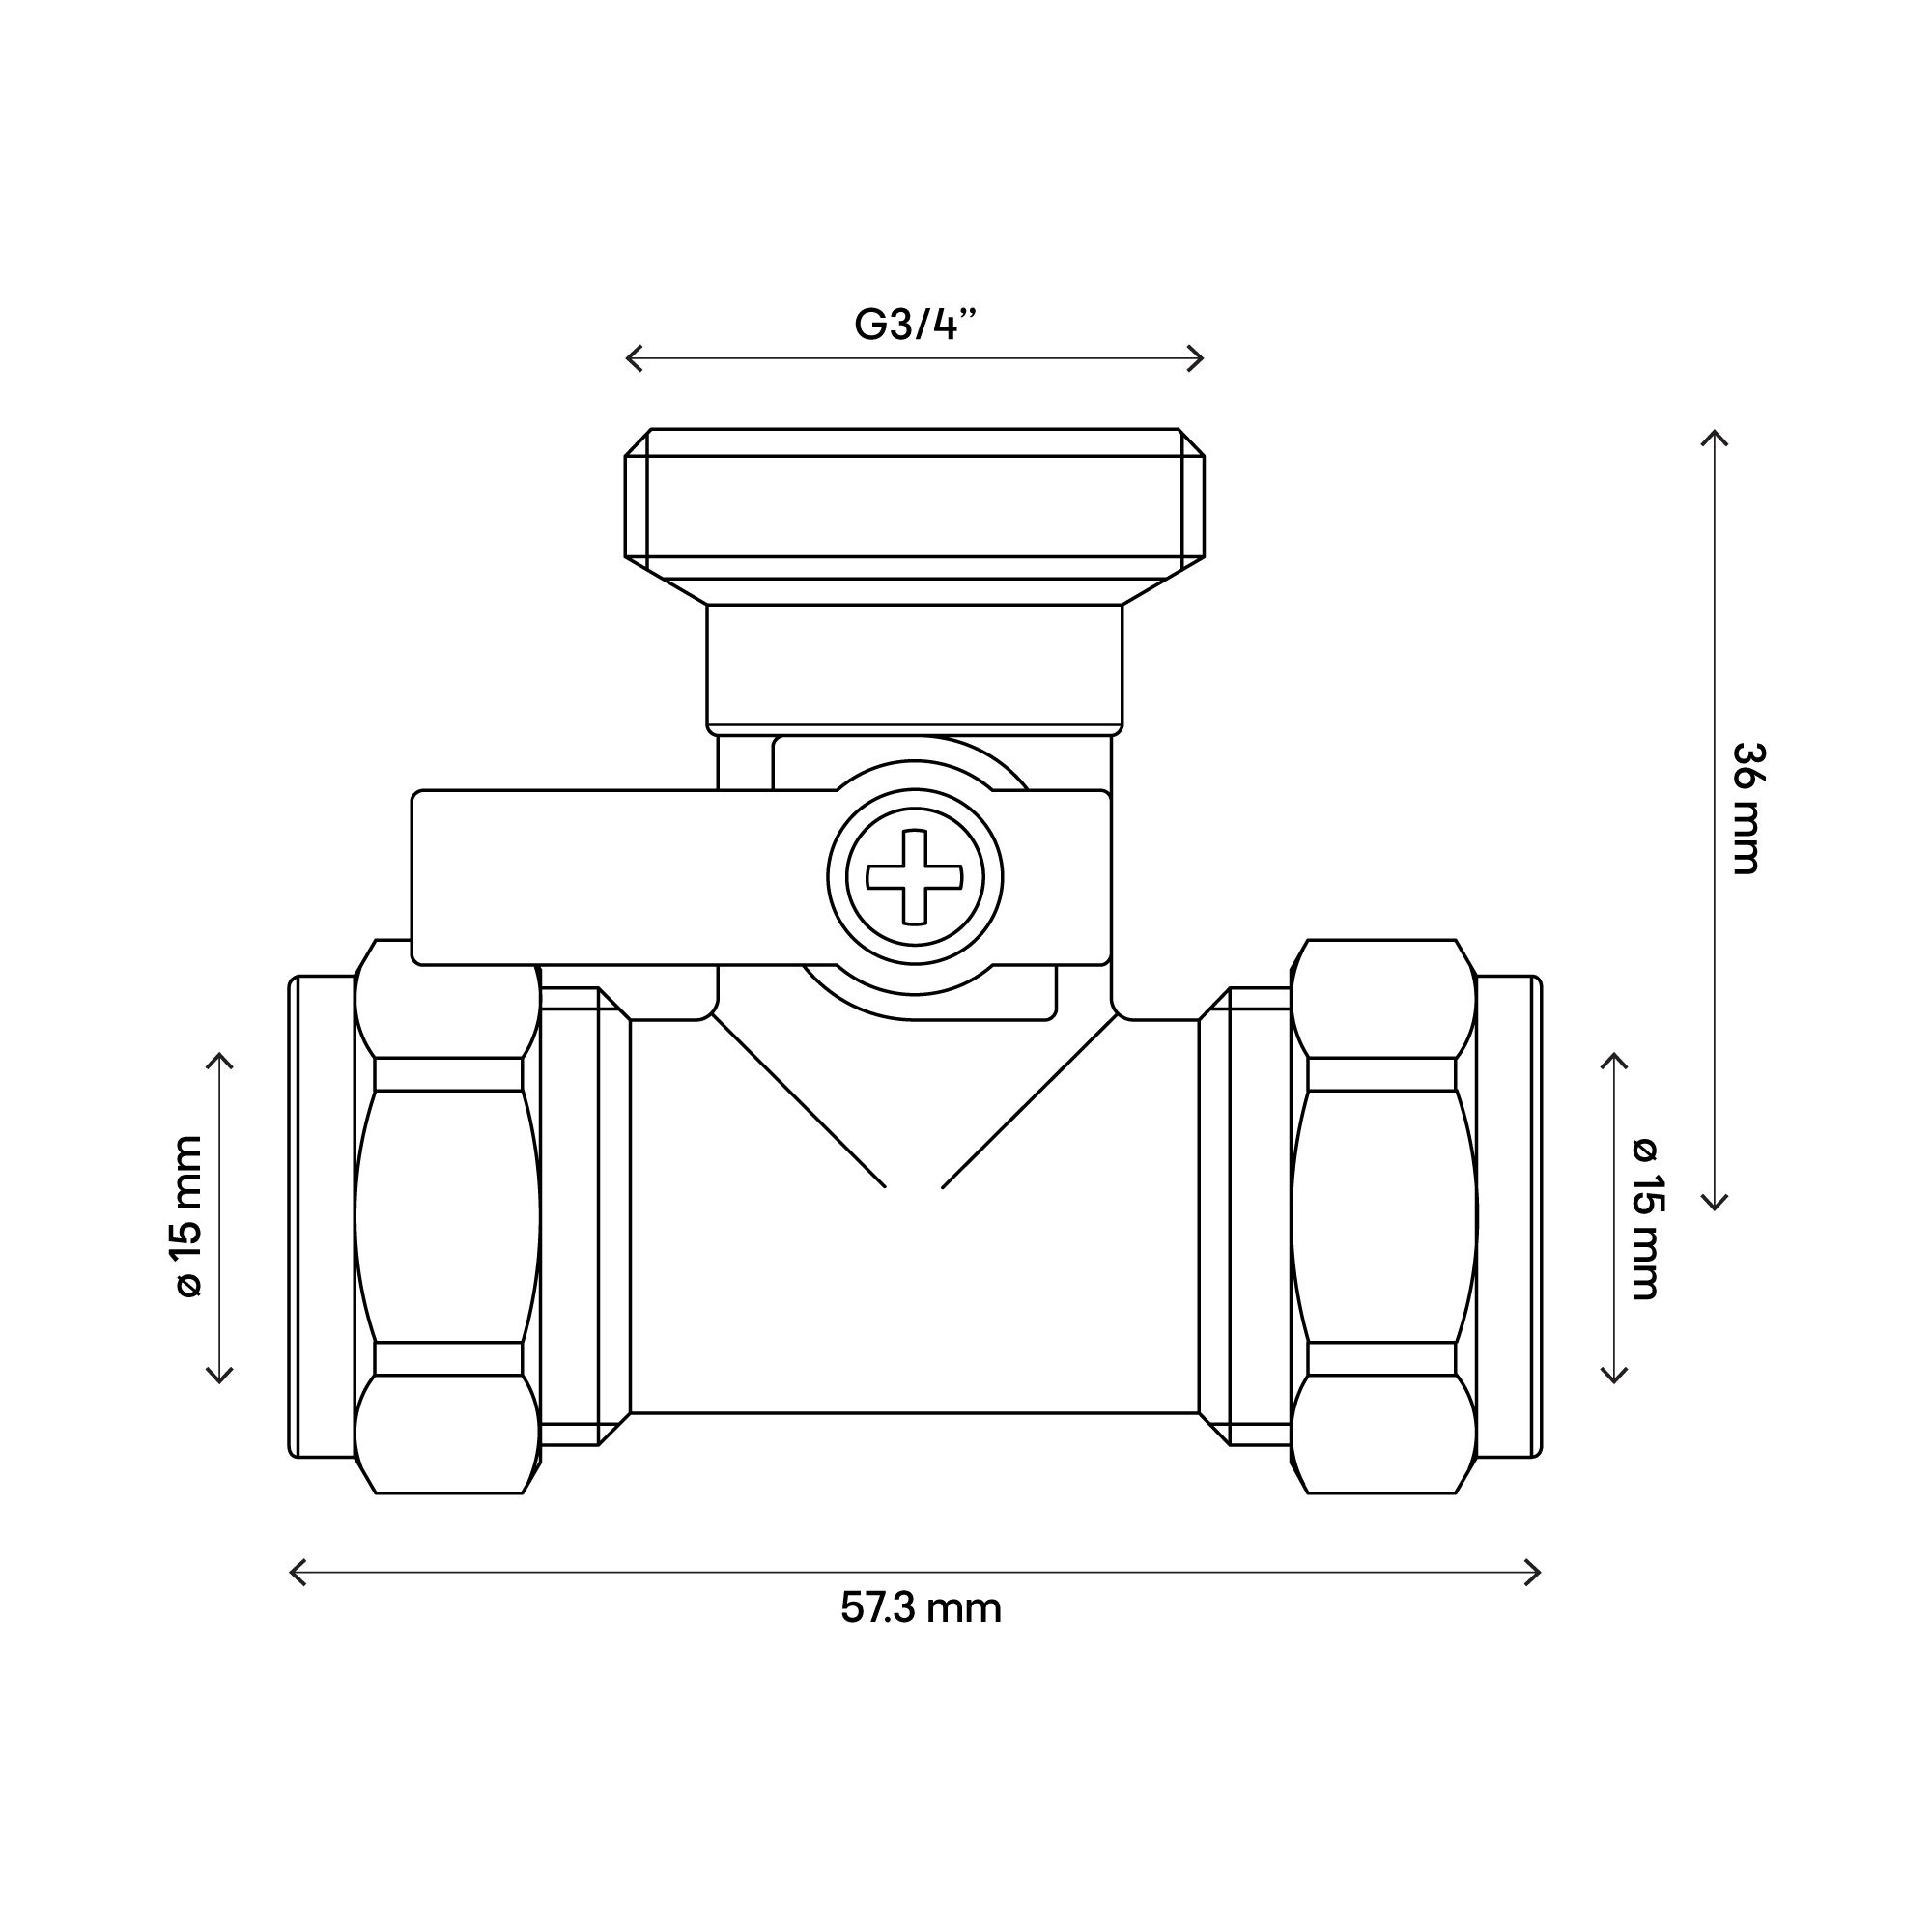 Flomasta Compression Reducing Washing machine Tee valve x 15mm x 15mm